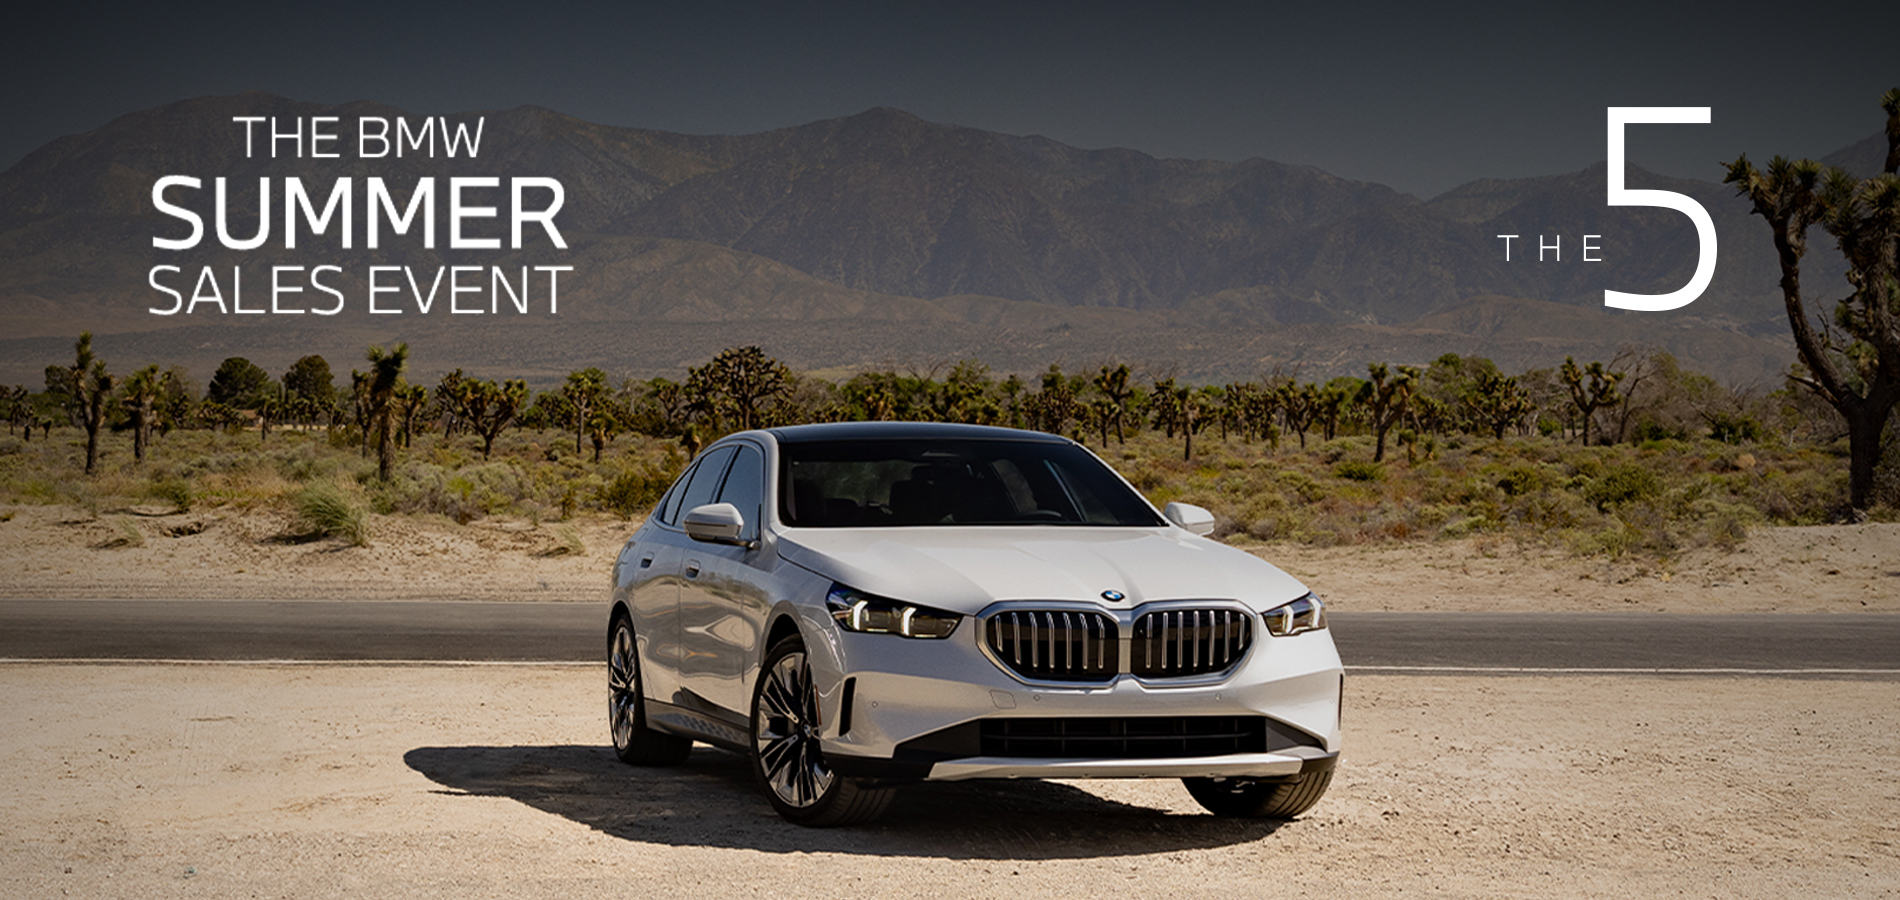 Parked BMW 5 Series in desert landscape